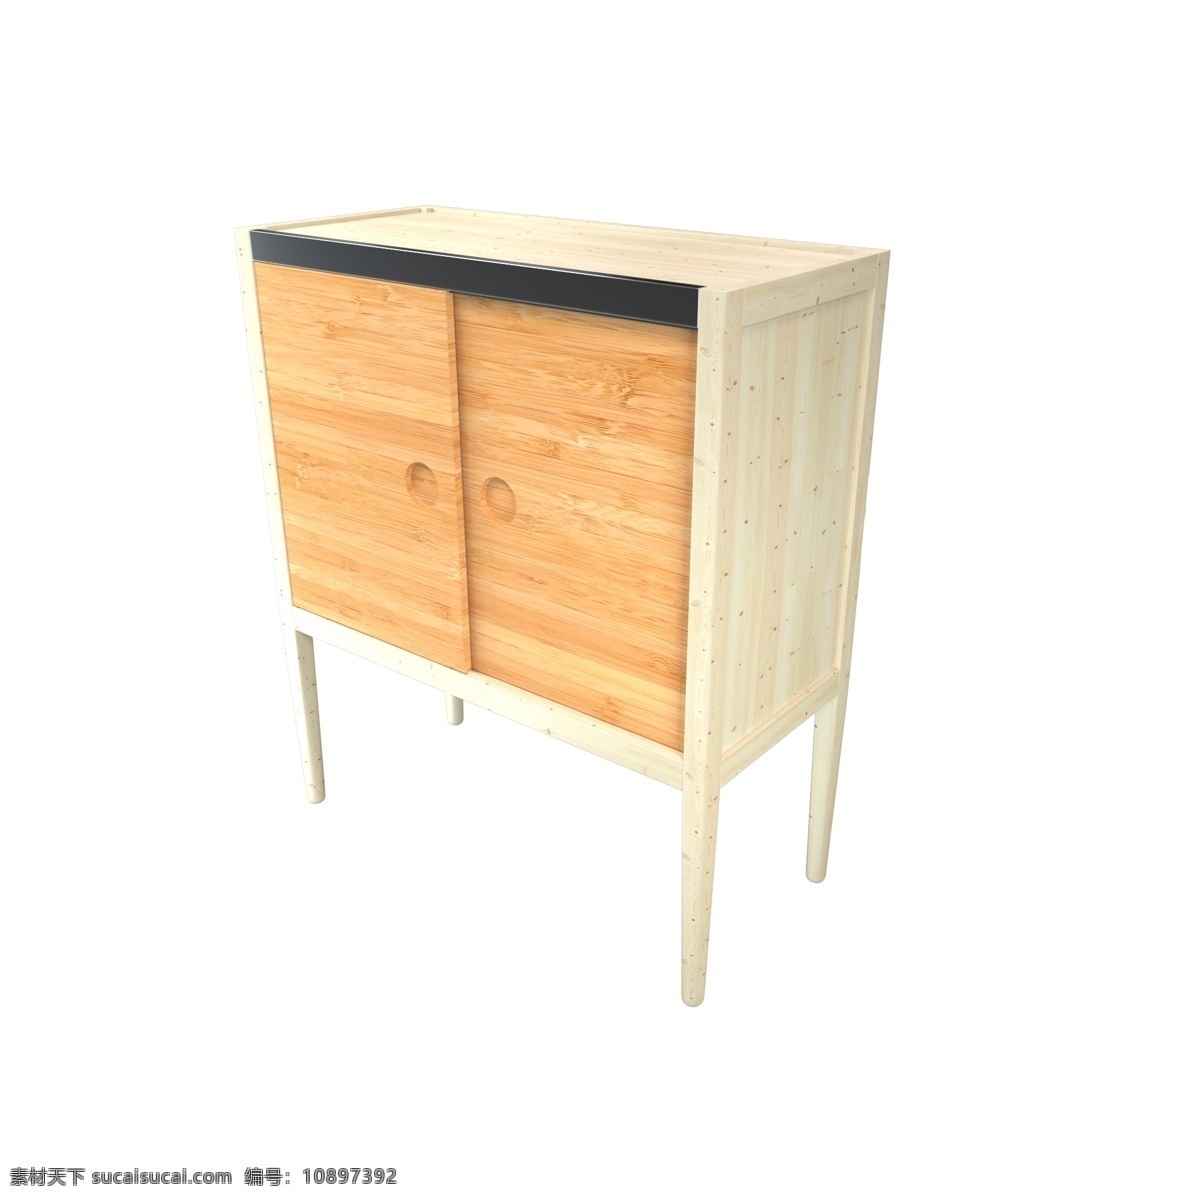 3d 木质 橱柜 组合柜 c4d 写实 家居 家具 家居生活馆 家装节 木质纹理 床头柜 柜子